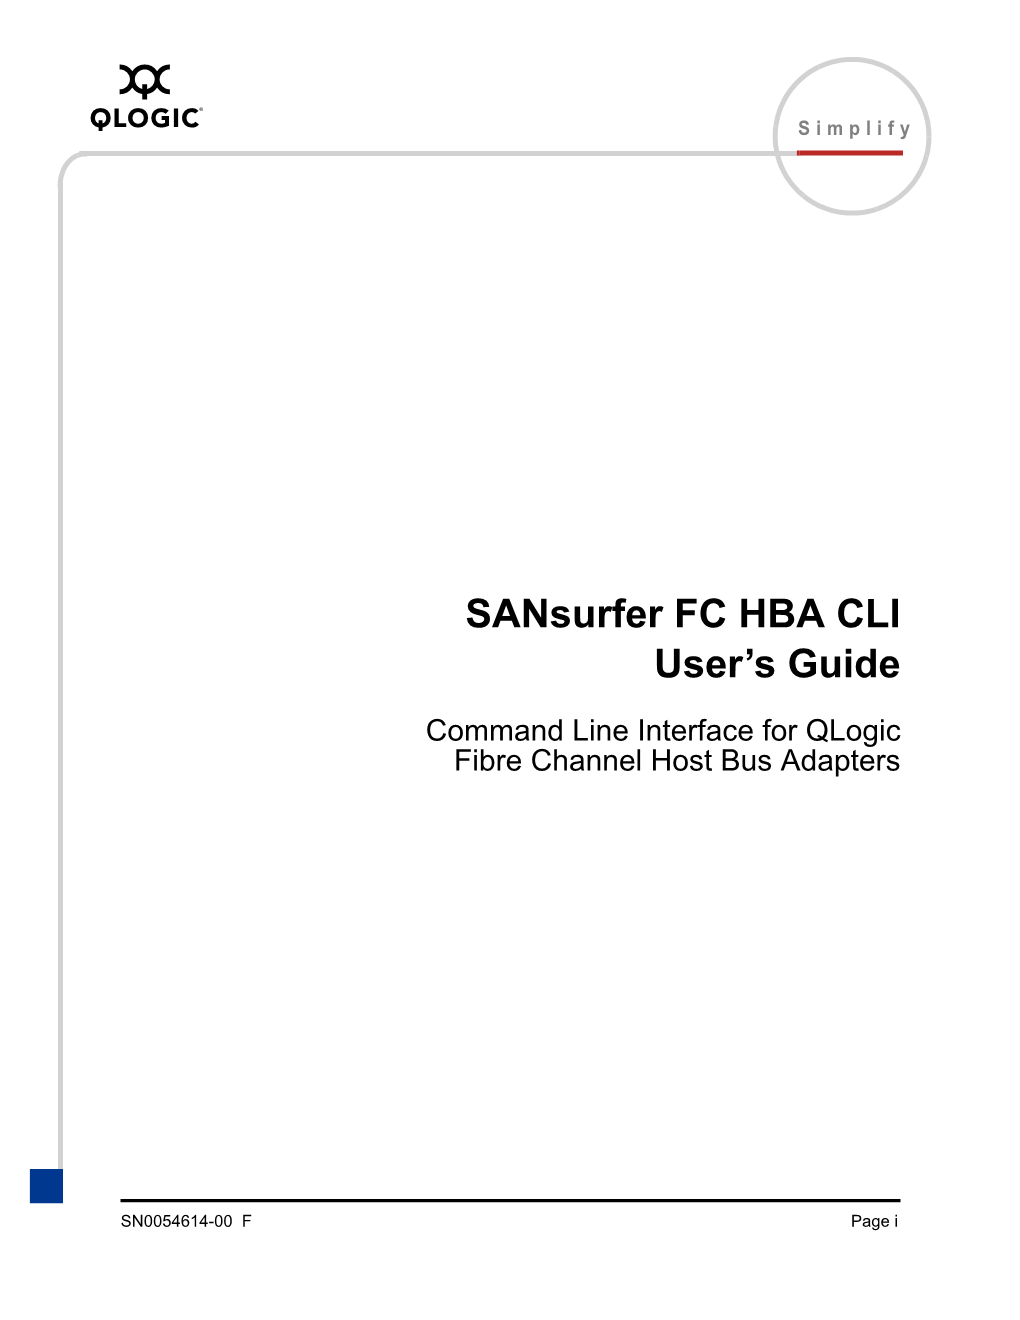 Sansurfer FC HBA CLI User's Guide